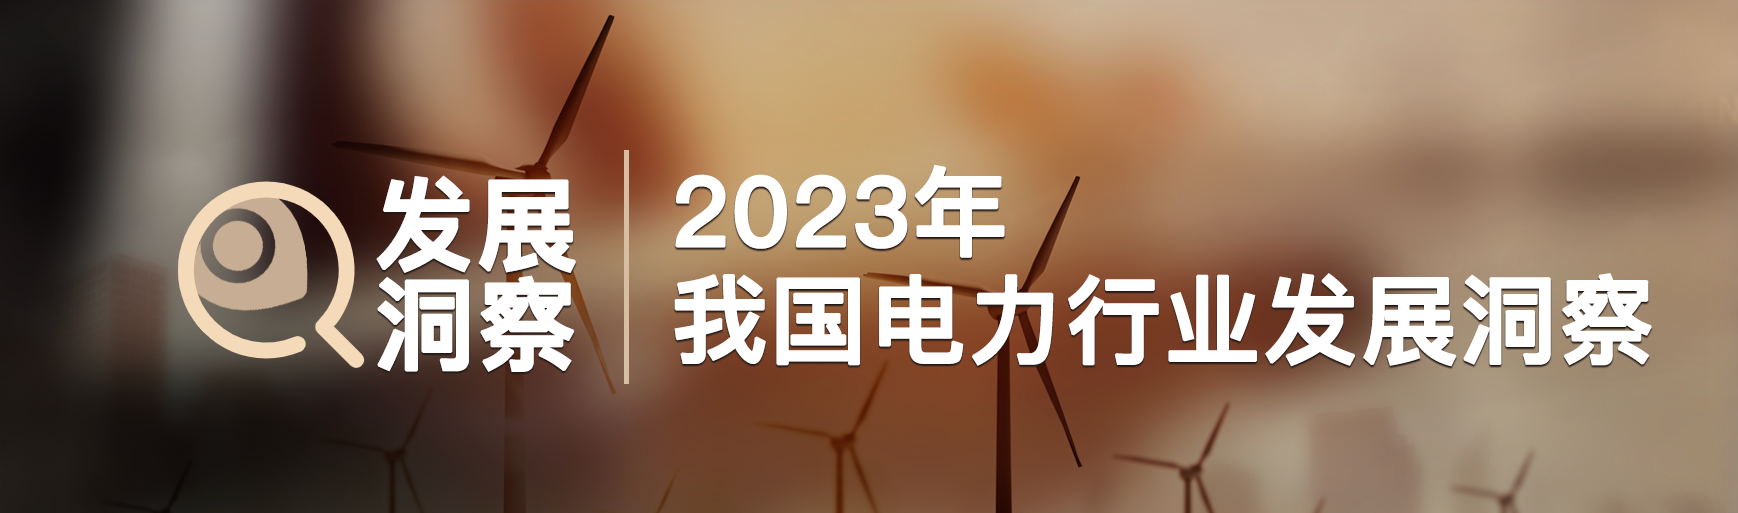 2023年电力行业发展洞察